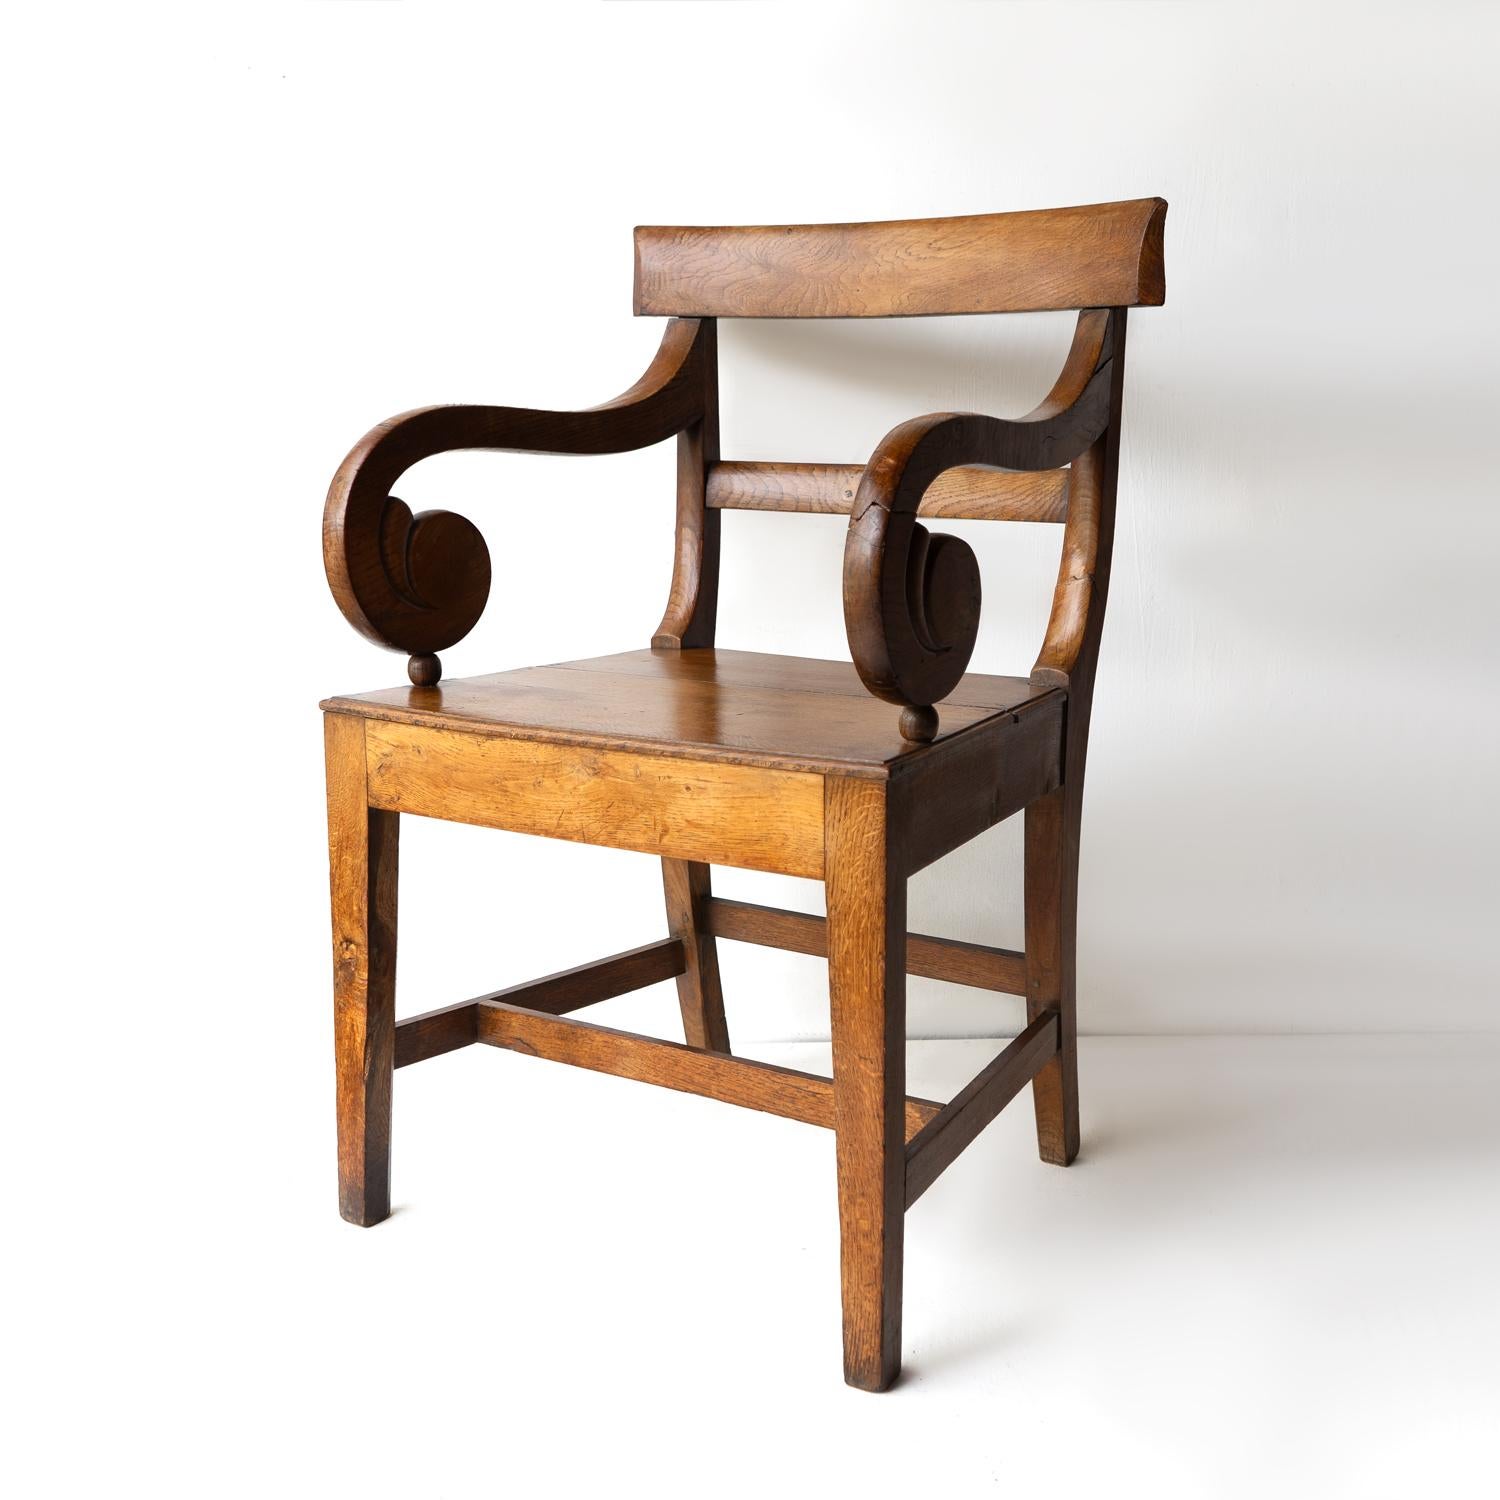 CHAISE COUDÉE ANTIQUE 

Une belle et généreuse chaise en chêne massif avec des articulations à chevilles, des accoudoirs sculptés à volutes, un dossier en forme, une assise solide et des pieds réunis par un brancard en 